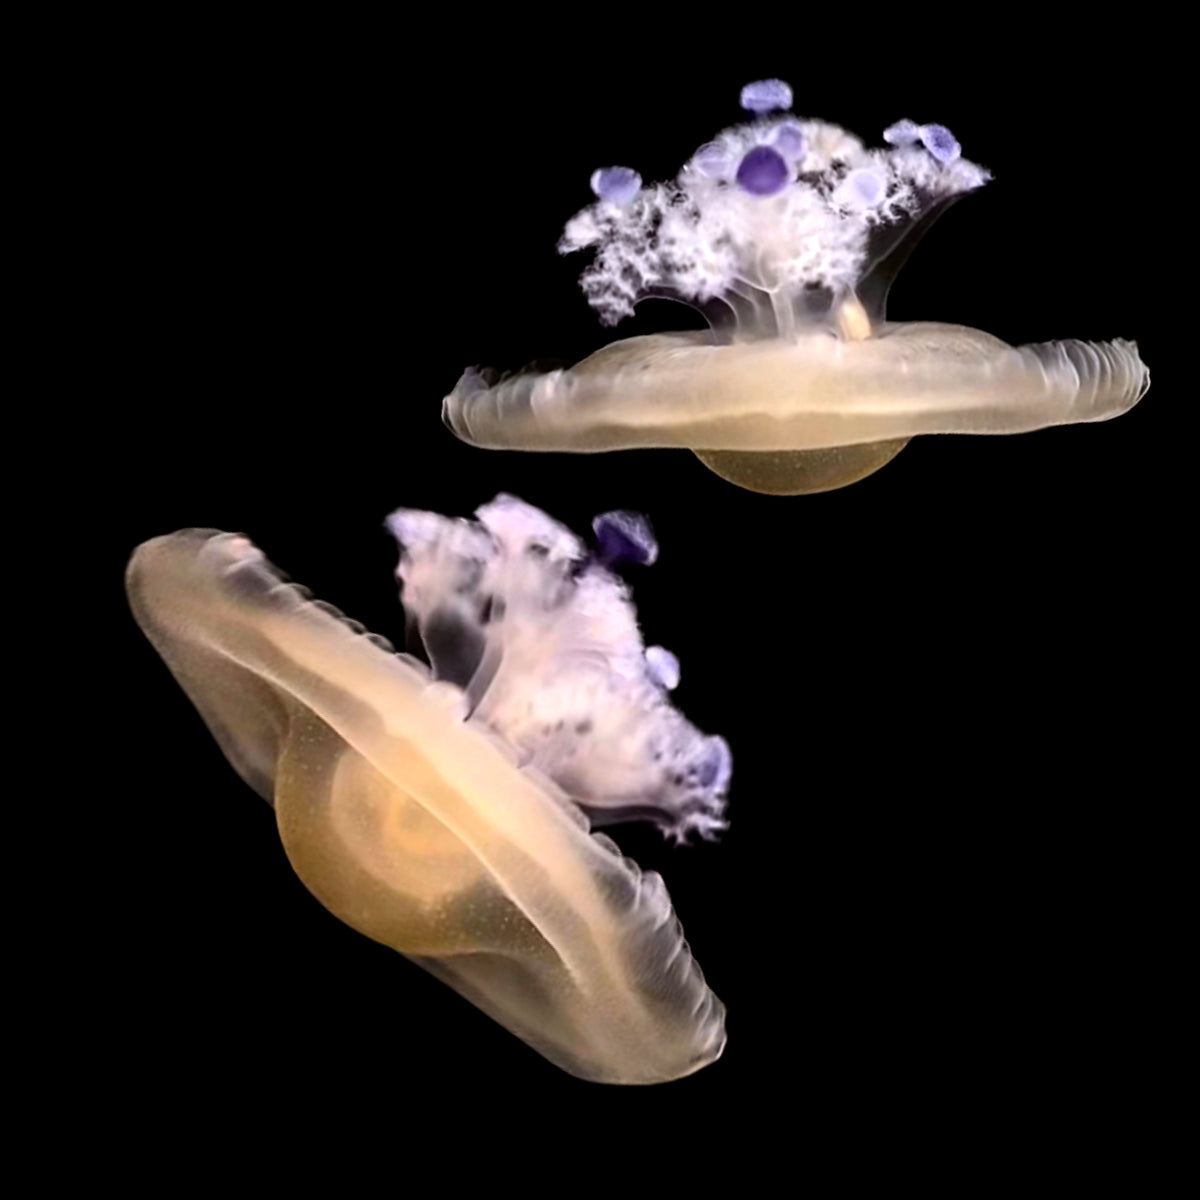 baby jellyfish eggs